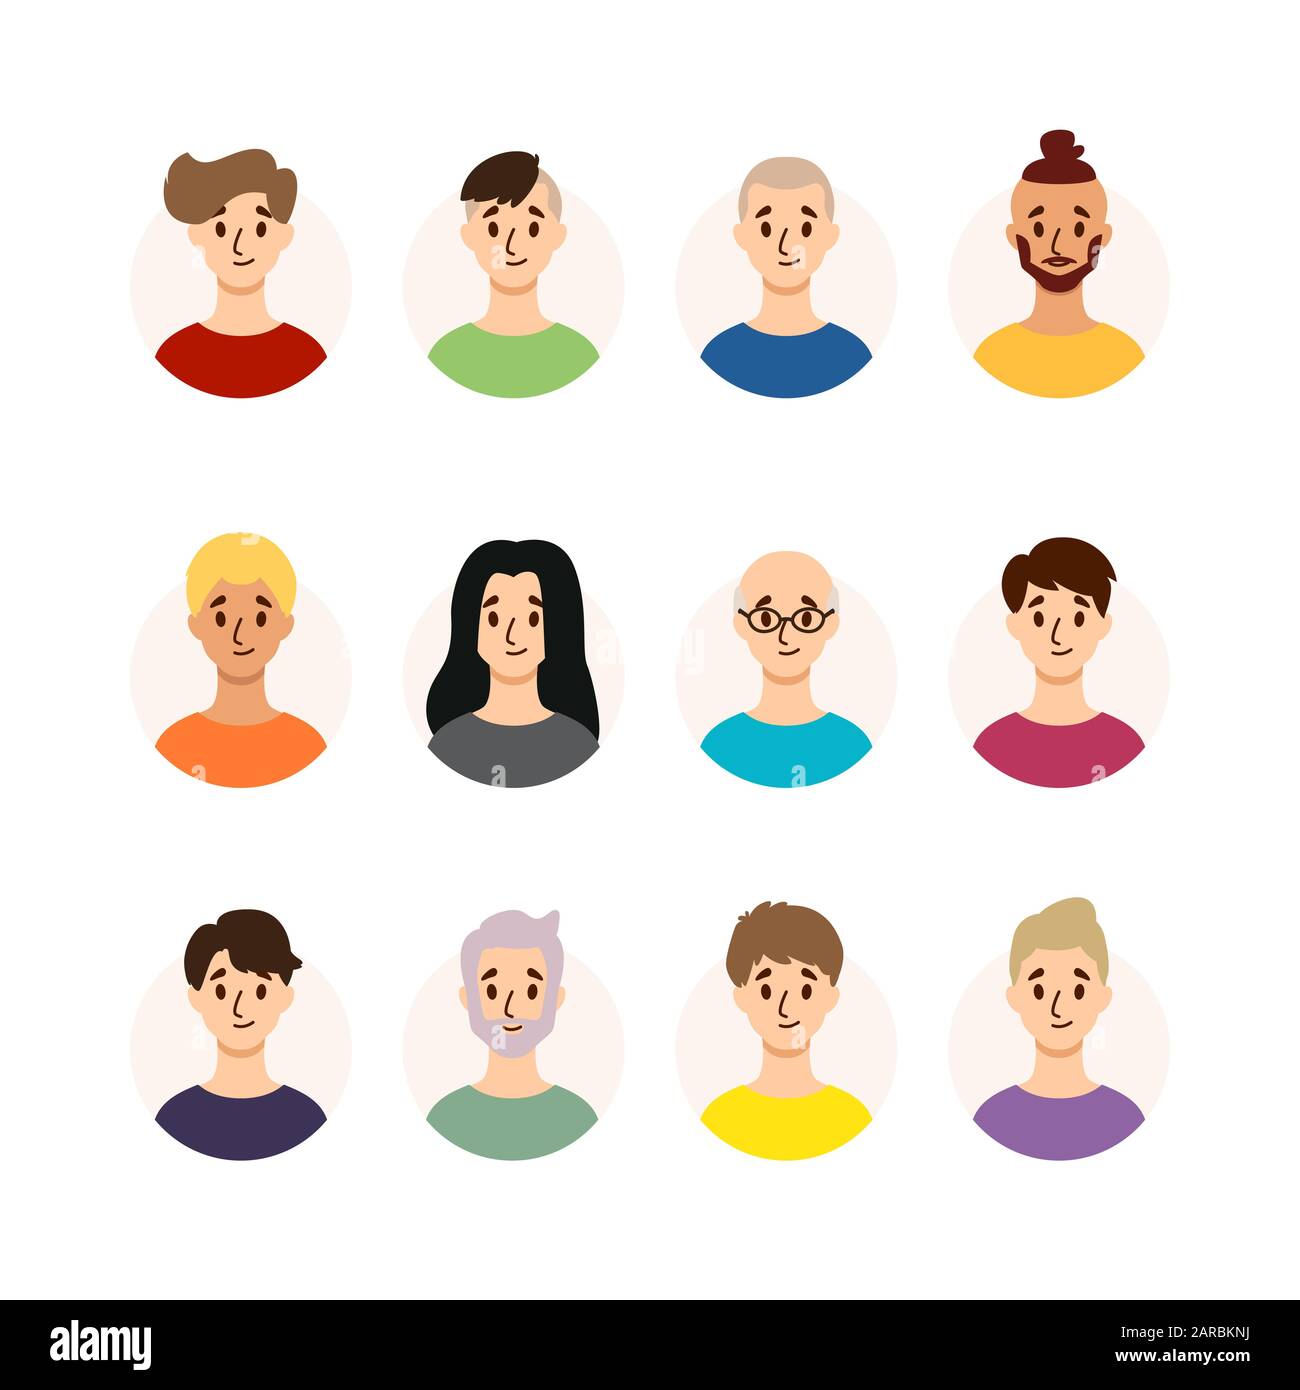 Männer mit verschiedenen Frisuren, Haarfarbe und Alter. Sammlung von männlichen Avataren. Vektorgrafiken isoliert auf weißem Hintergrund. Flacher Stil. Stock Vektor